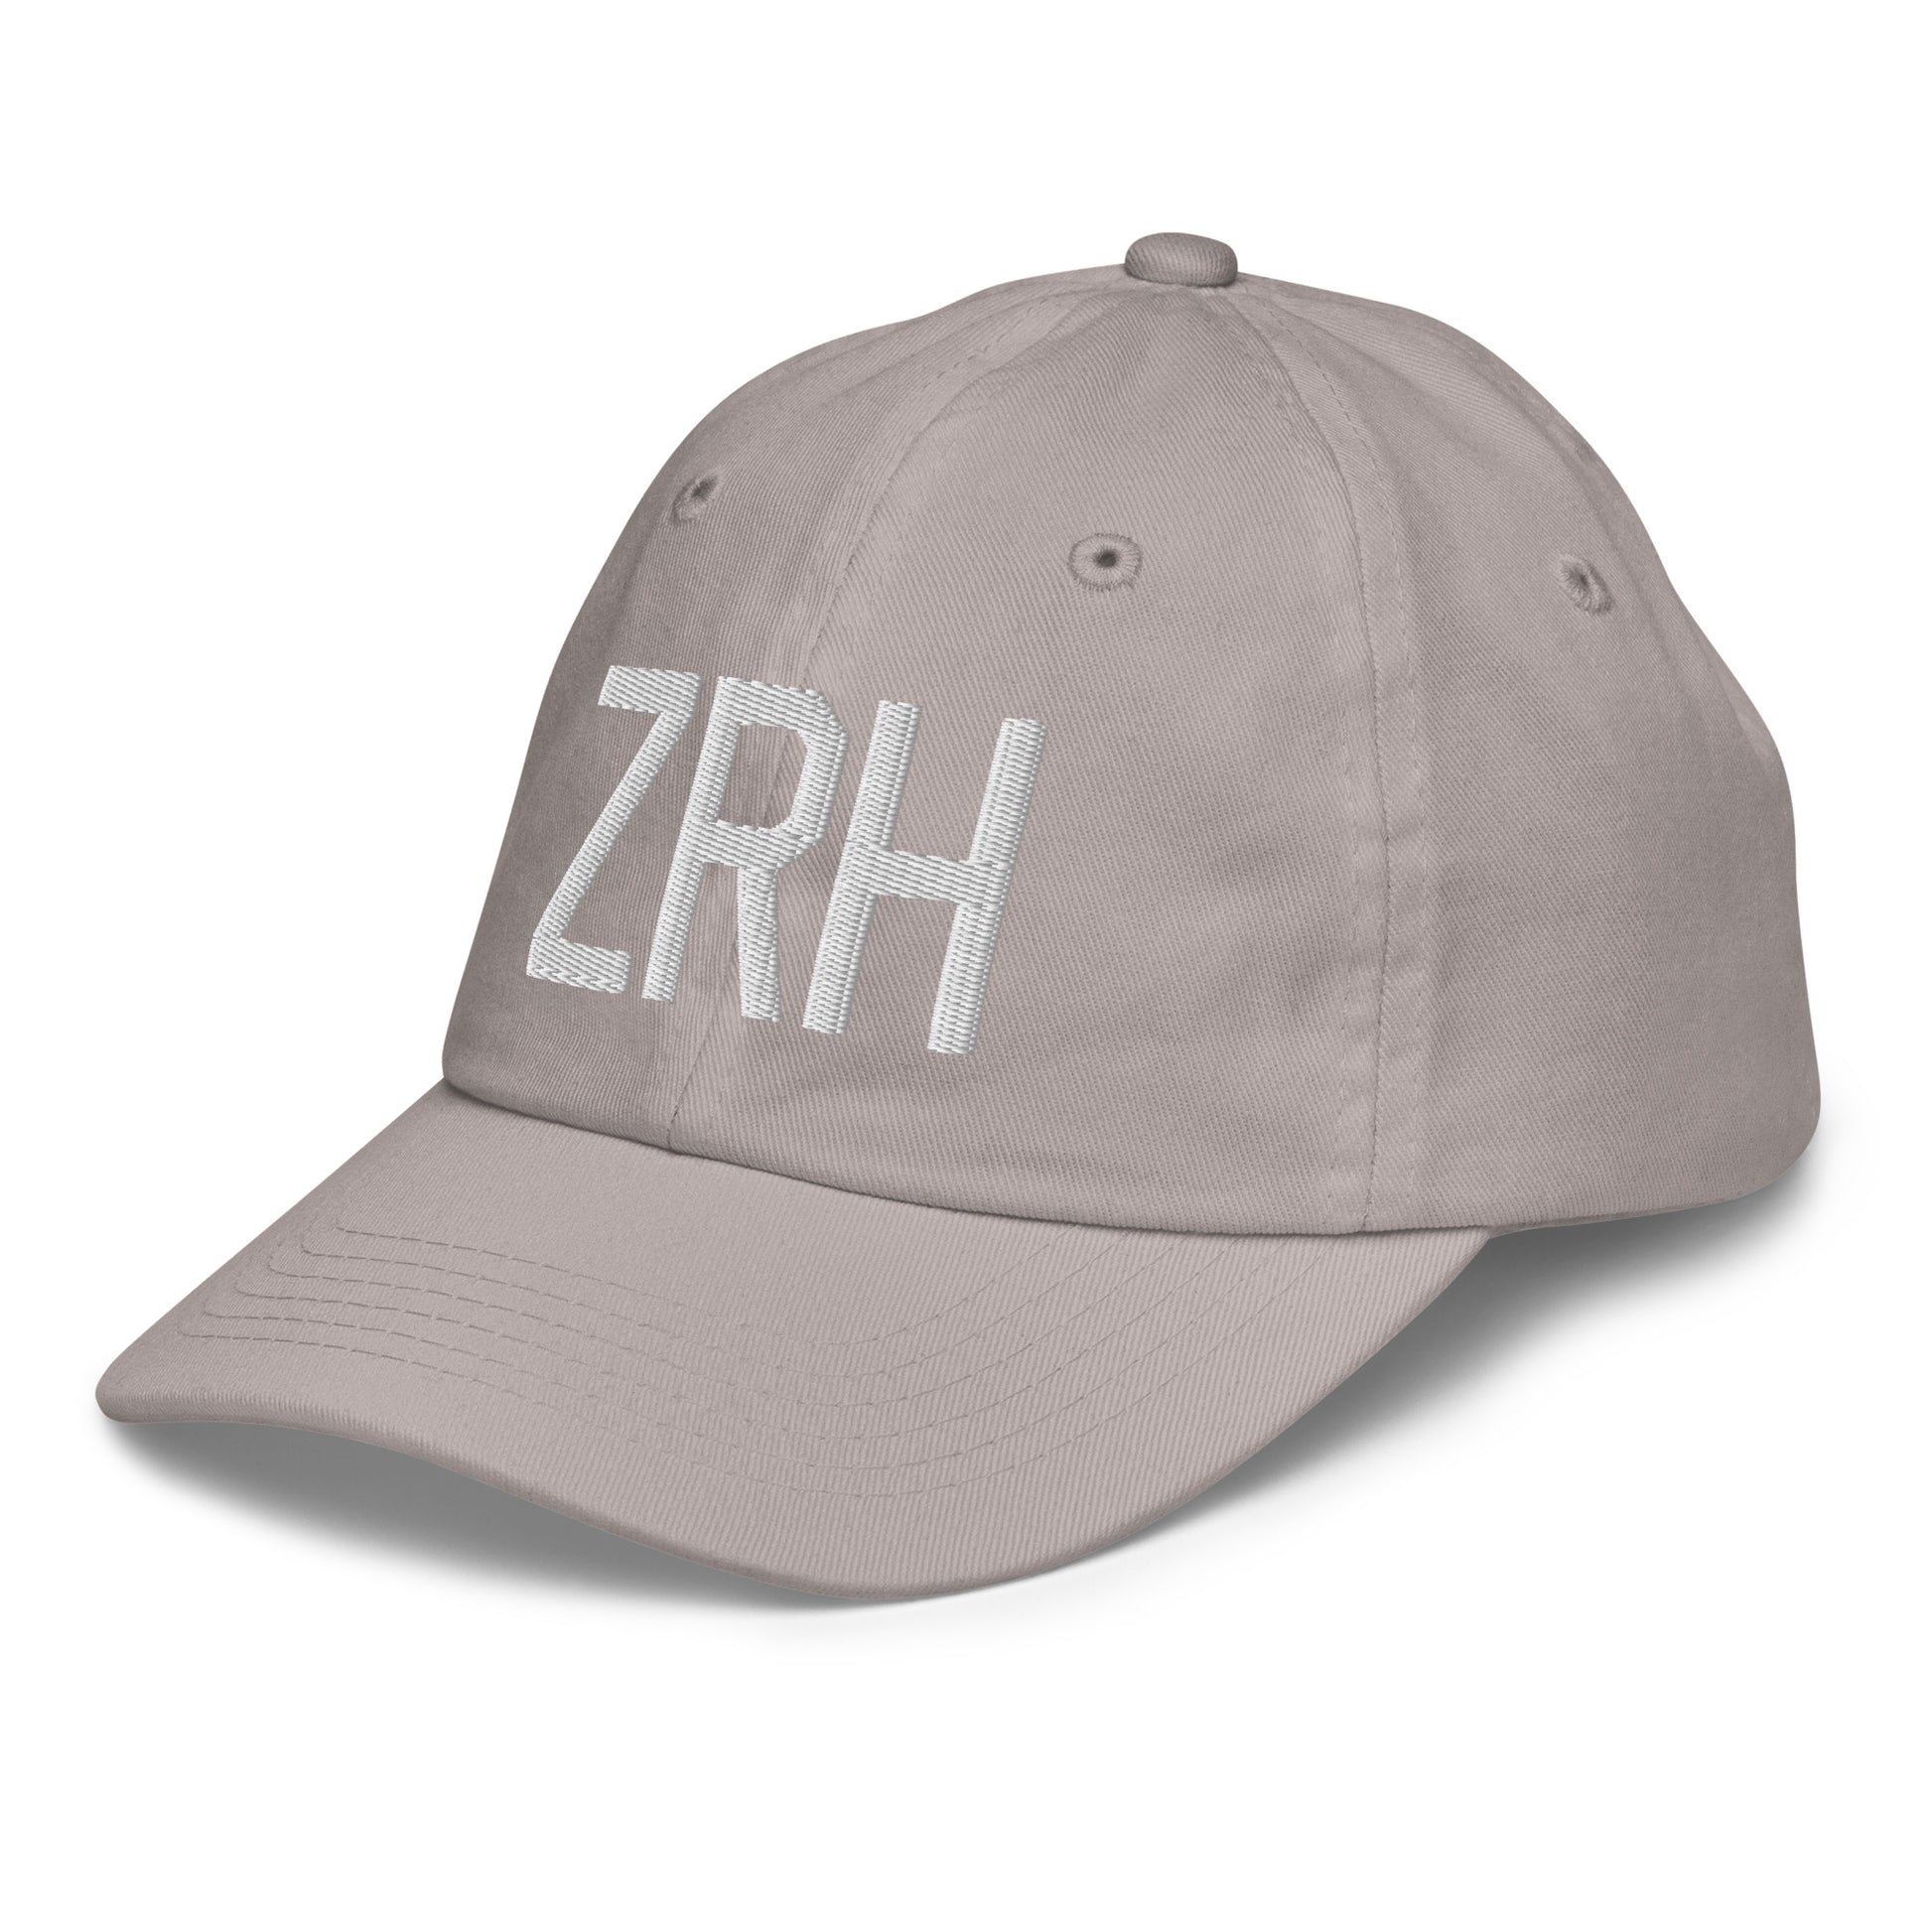 Airport Code Kid's Baseball Cap - White • ZRH Zurich • YHM Designs - Image 27